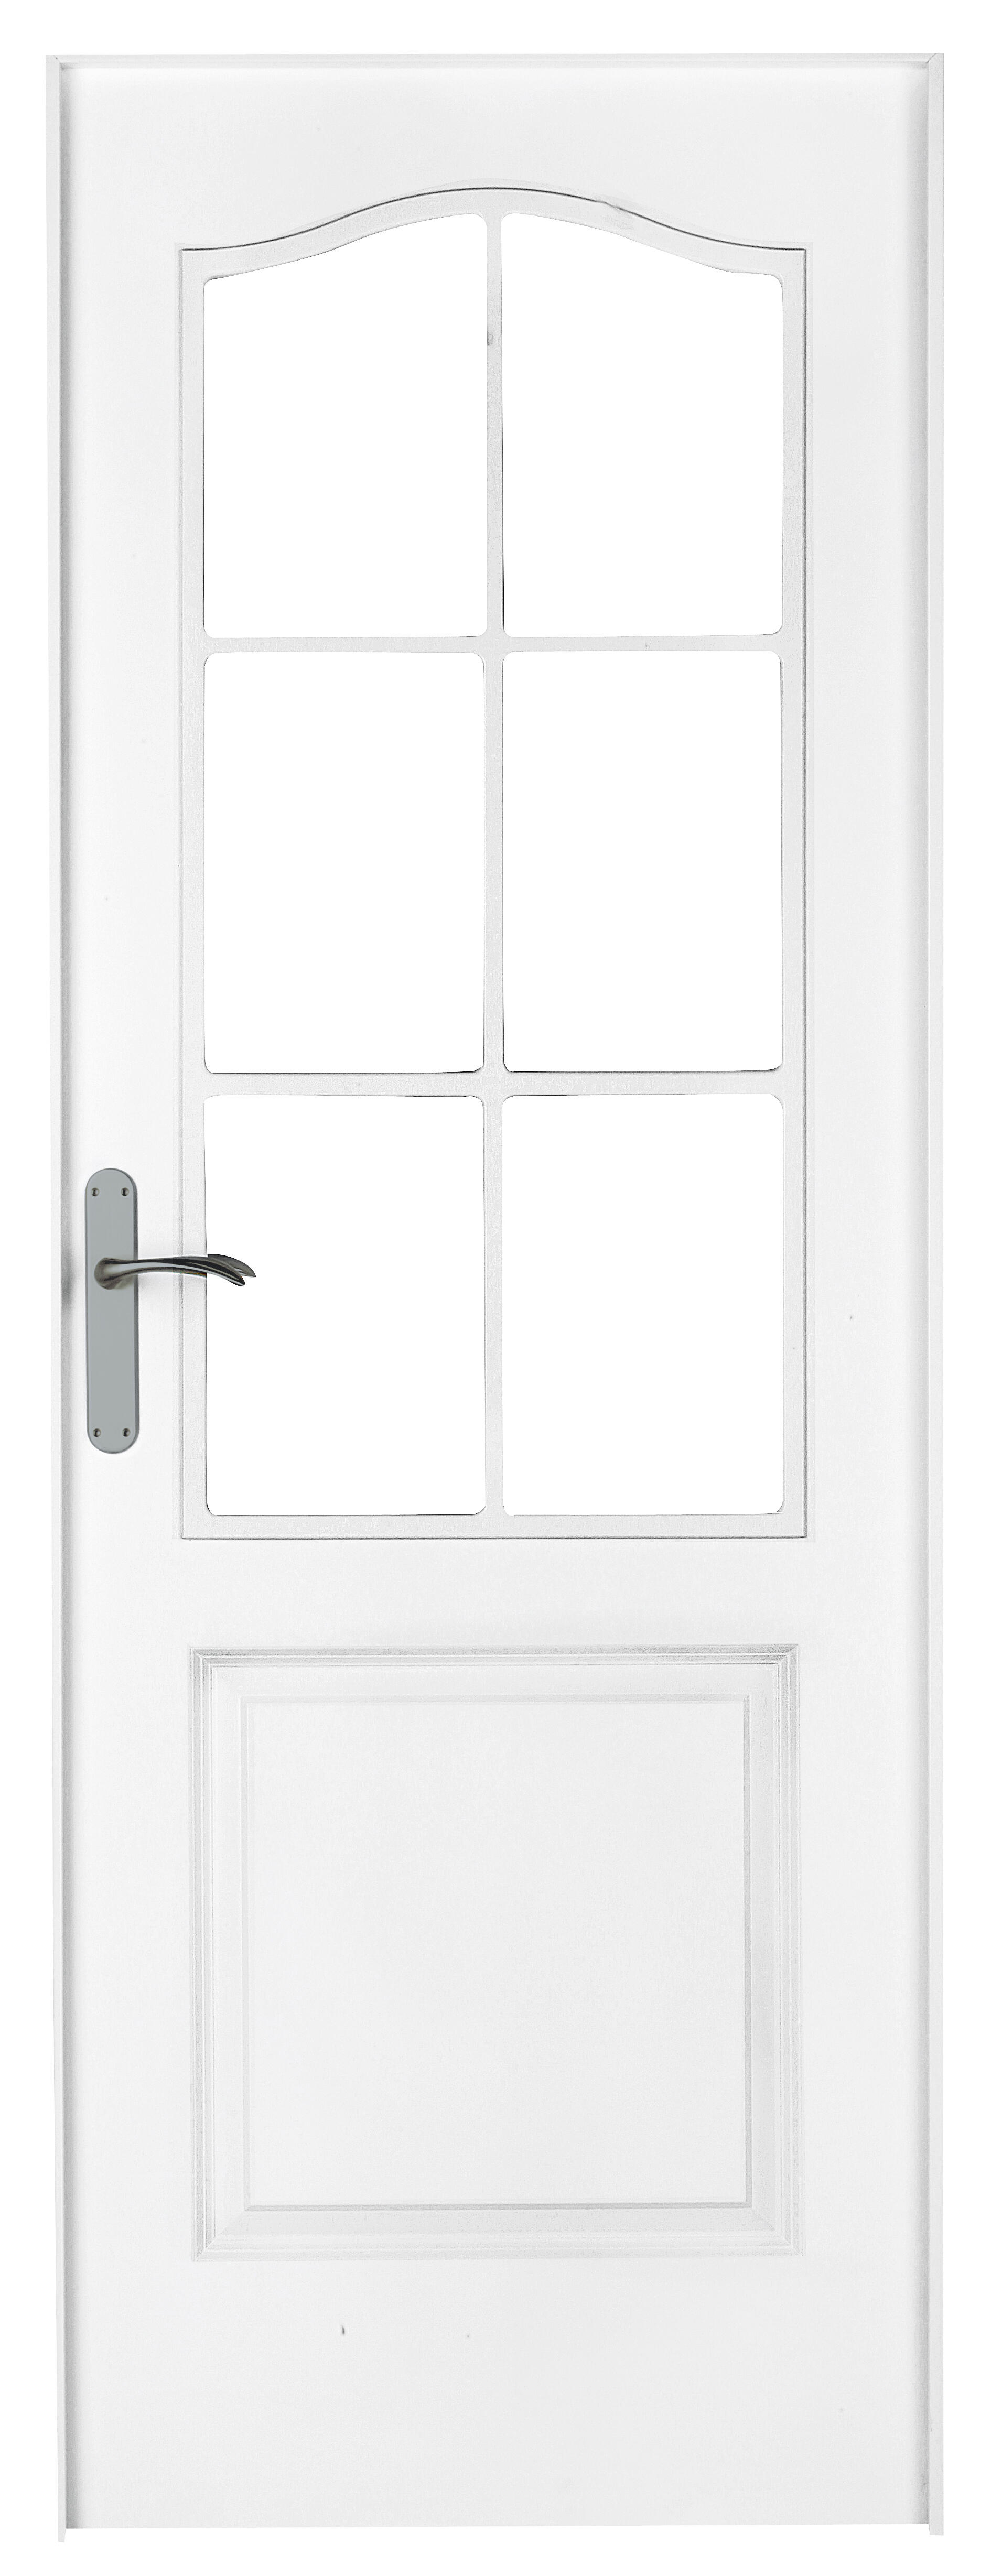 Puerta abatible bonn blanca aero blanco derecha con cristal de 110x30 y 82.5cm